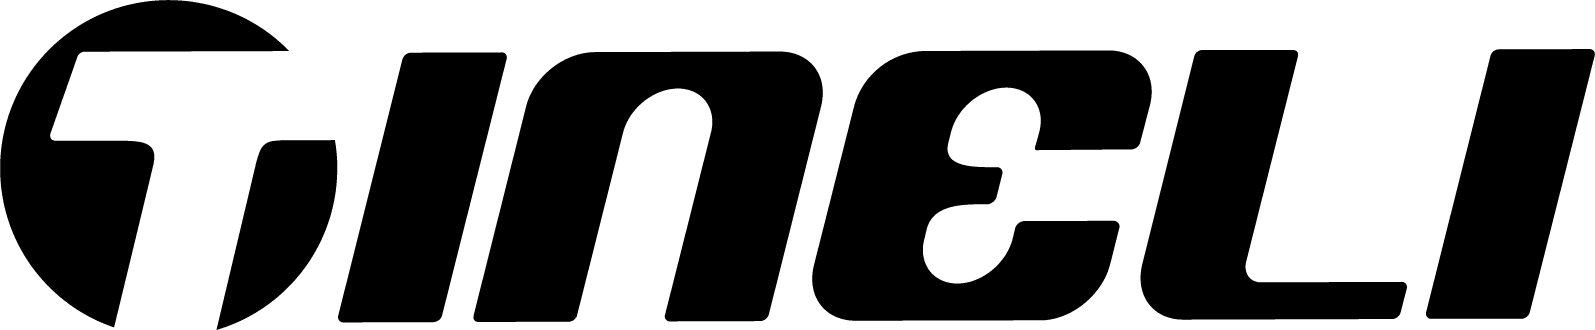 Tineli_logo